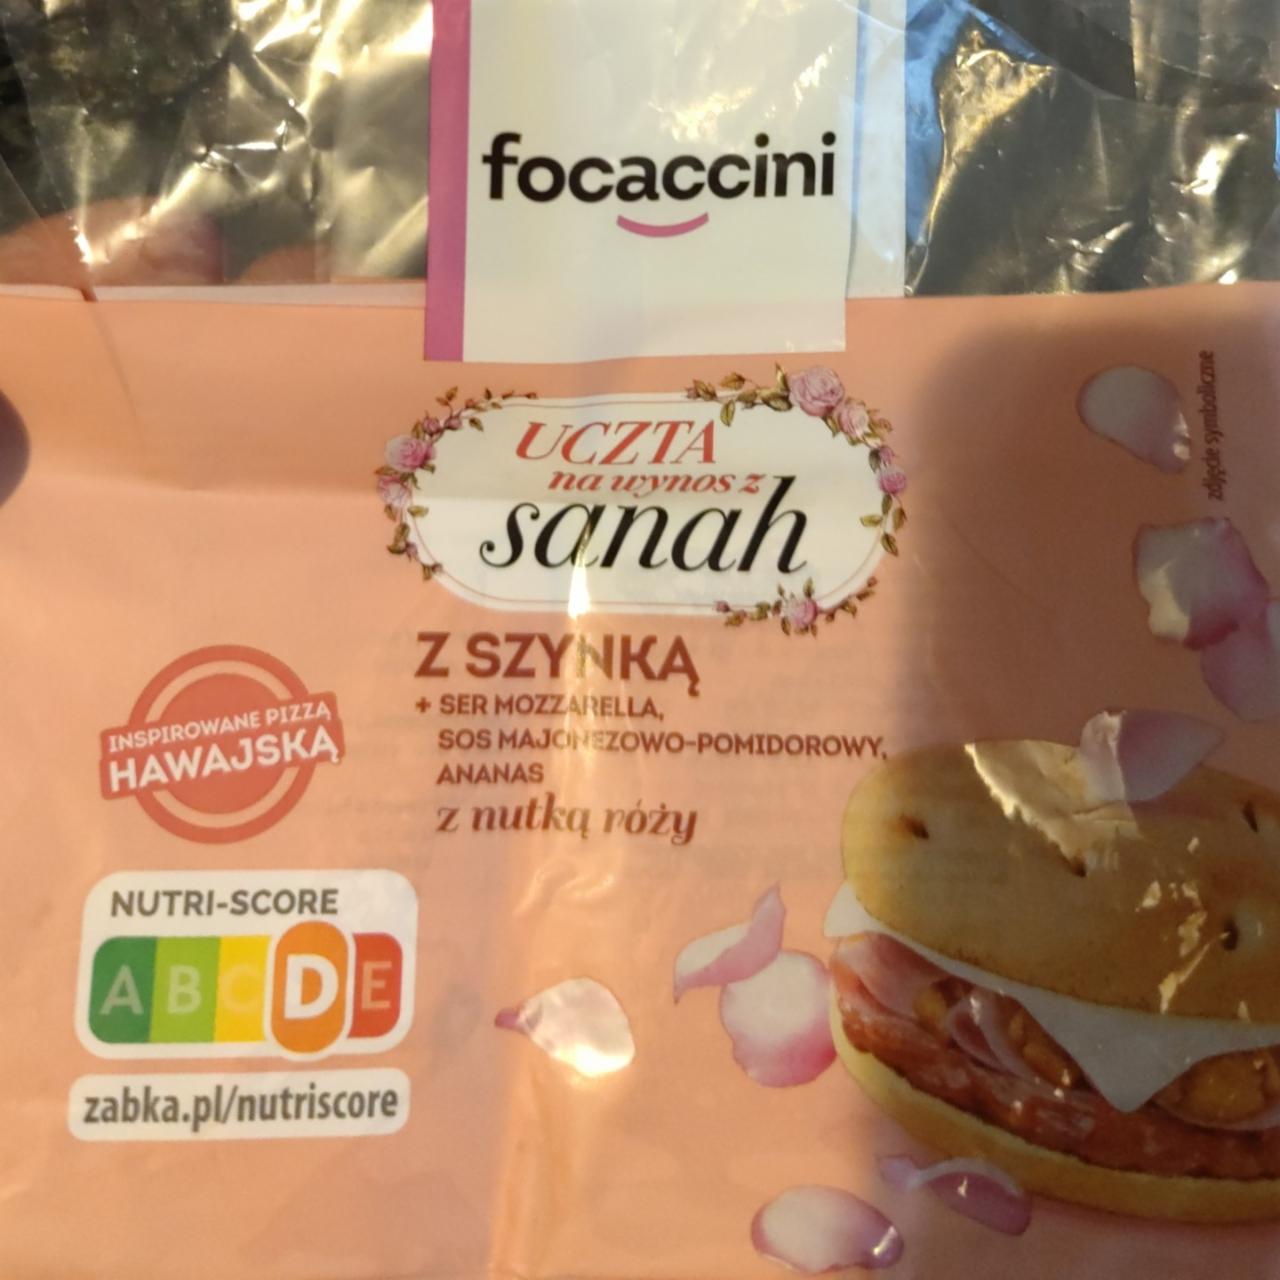 Zdjęcia - Focaccini uczta na wynos z sanah z szynką, mozzarellą i sosem majonezowo pomidorowym Żabka